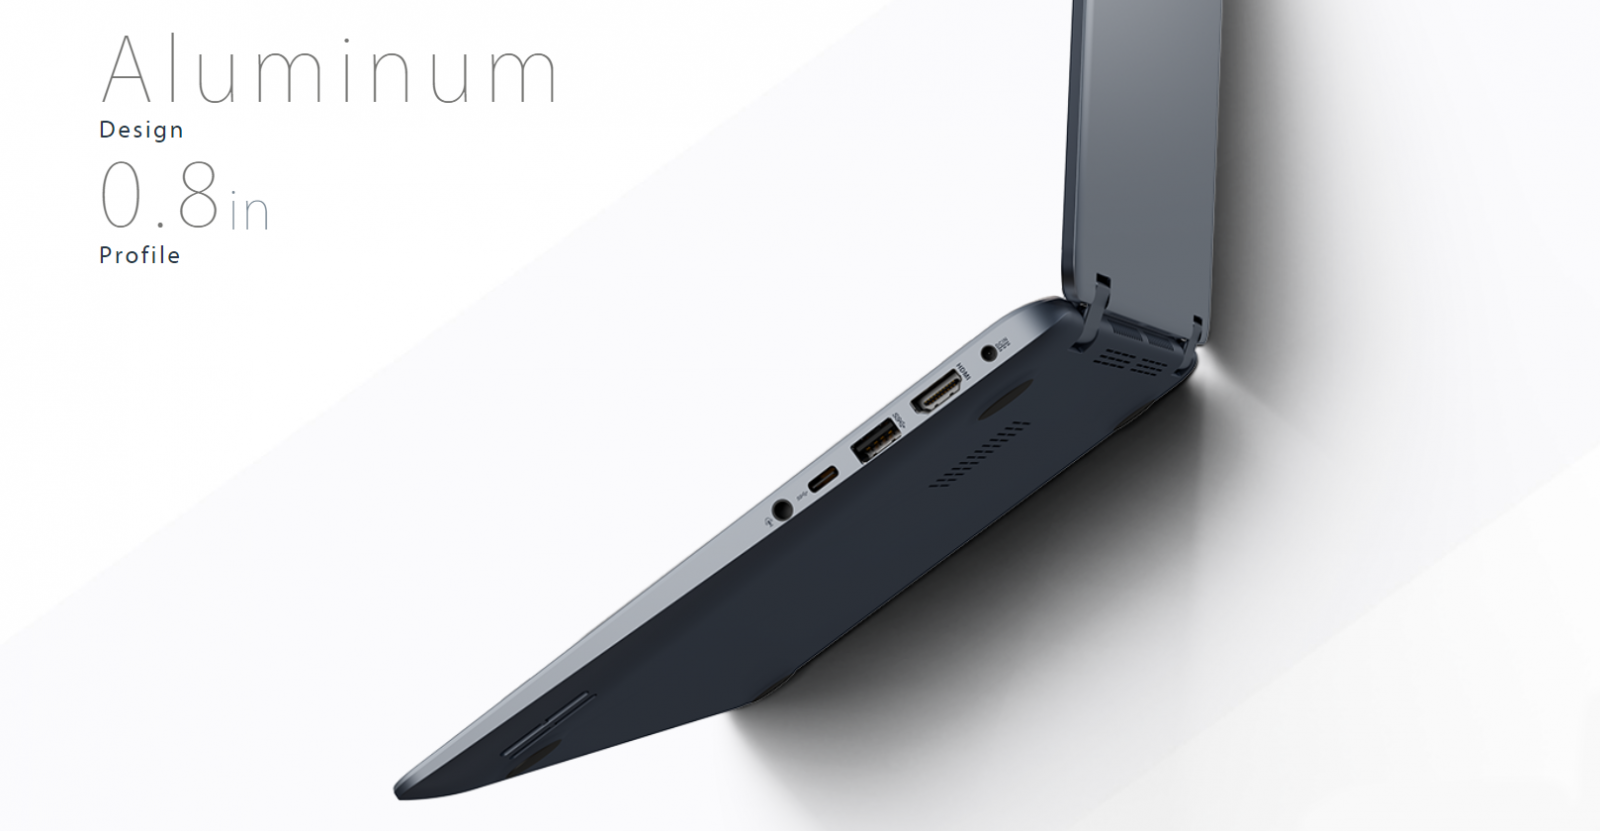 у ноутбука ASUS VivoBook Flip 14 малый вес - 1.6 кг